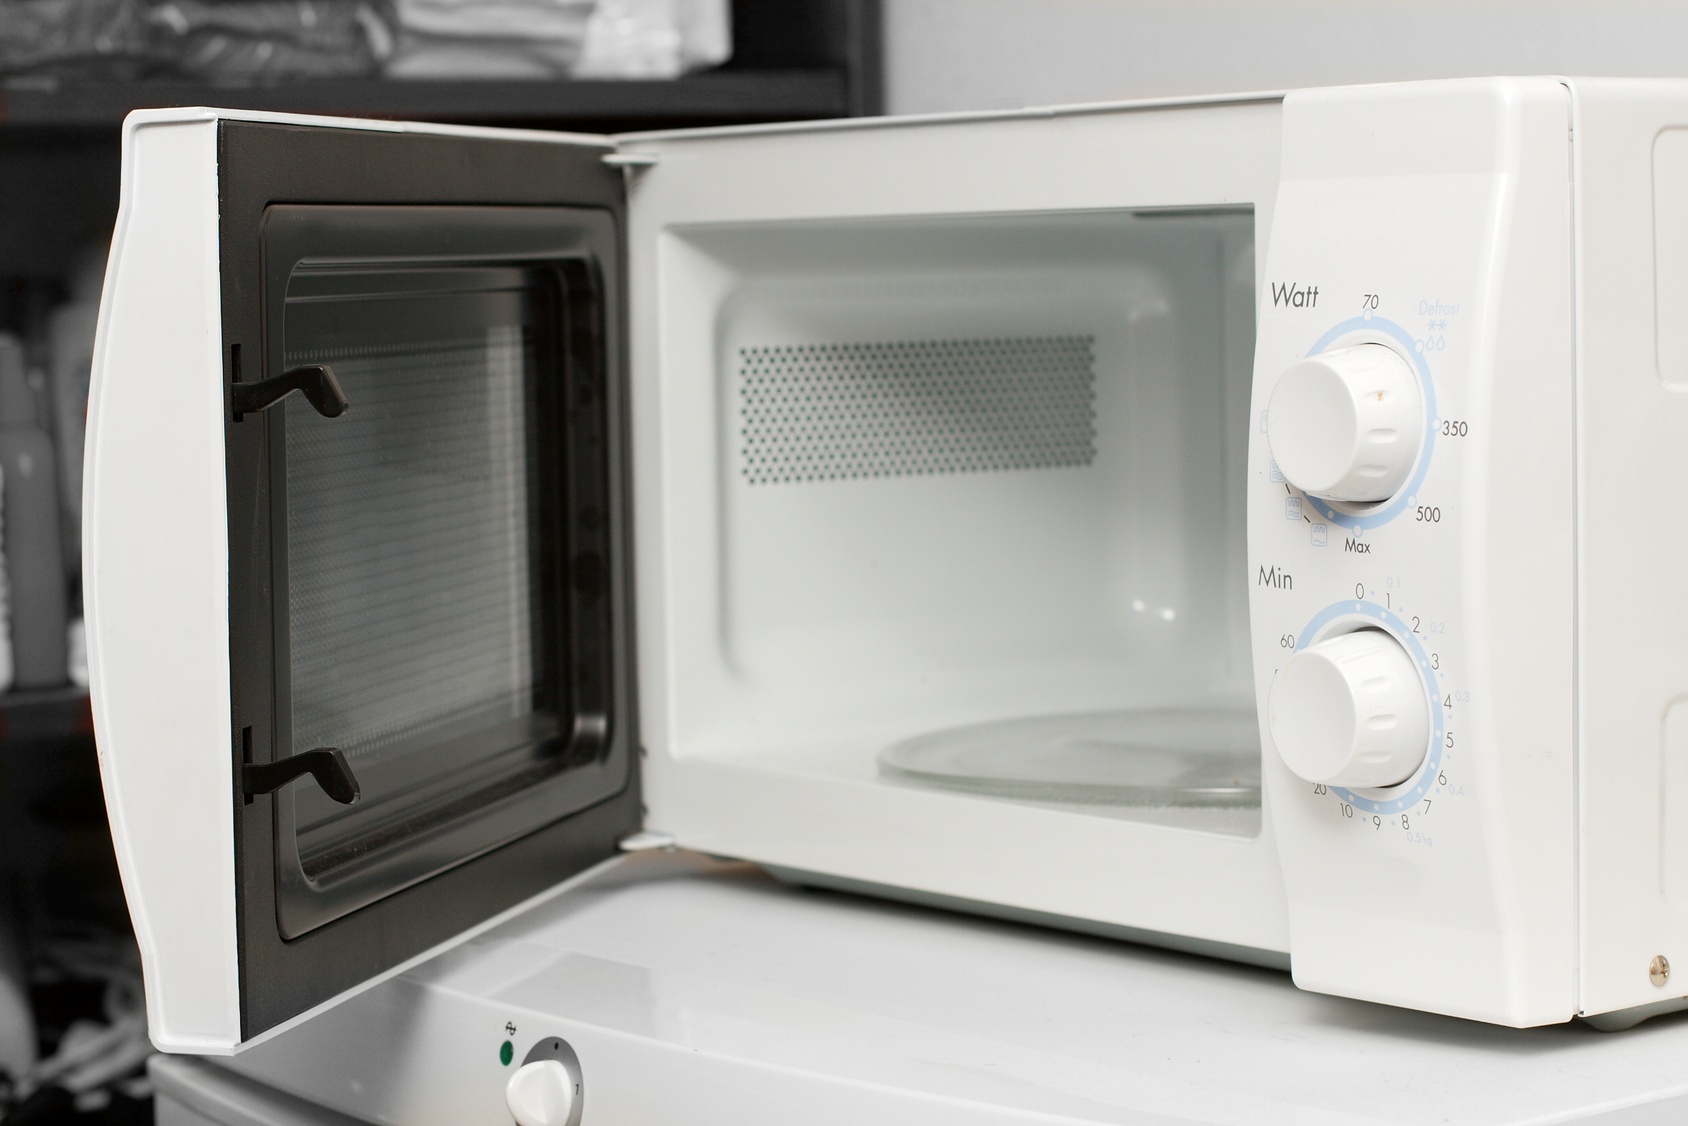 Печь свч 1. Микроволновая печь Microwave Oven. Микроволновая печь Melissa MWK-245g. Микроволновка GS 720-457-1.